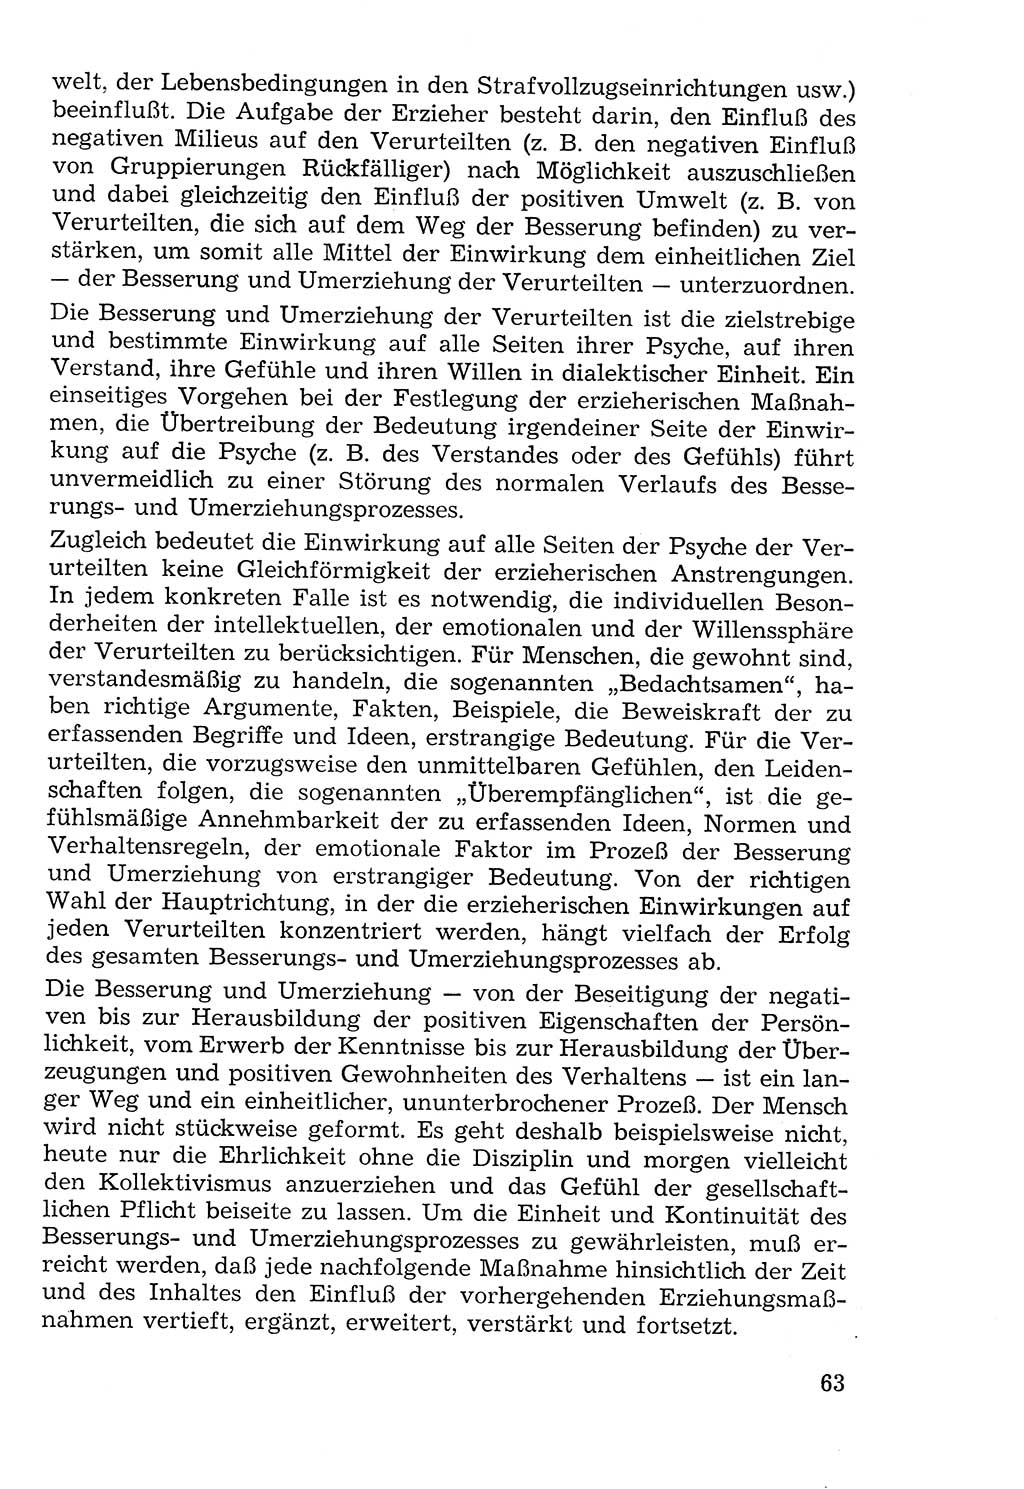 Lehrbuch der Strafvollzugspädagogik [Deutsche Demokratische Republik (DDR)] 1969, Seite 63 (Lb. SV-Pd. DDR 1969, S. 63)